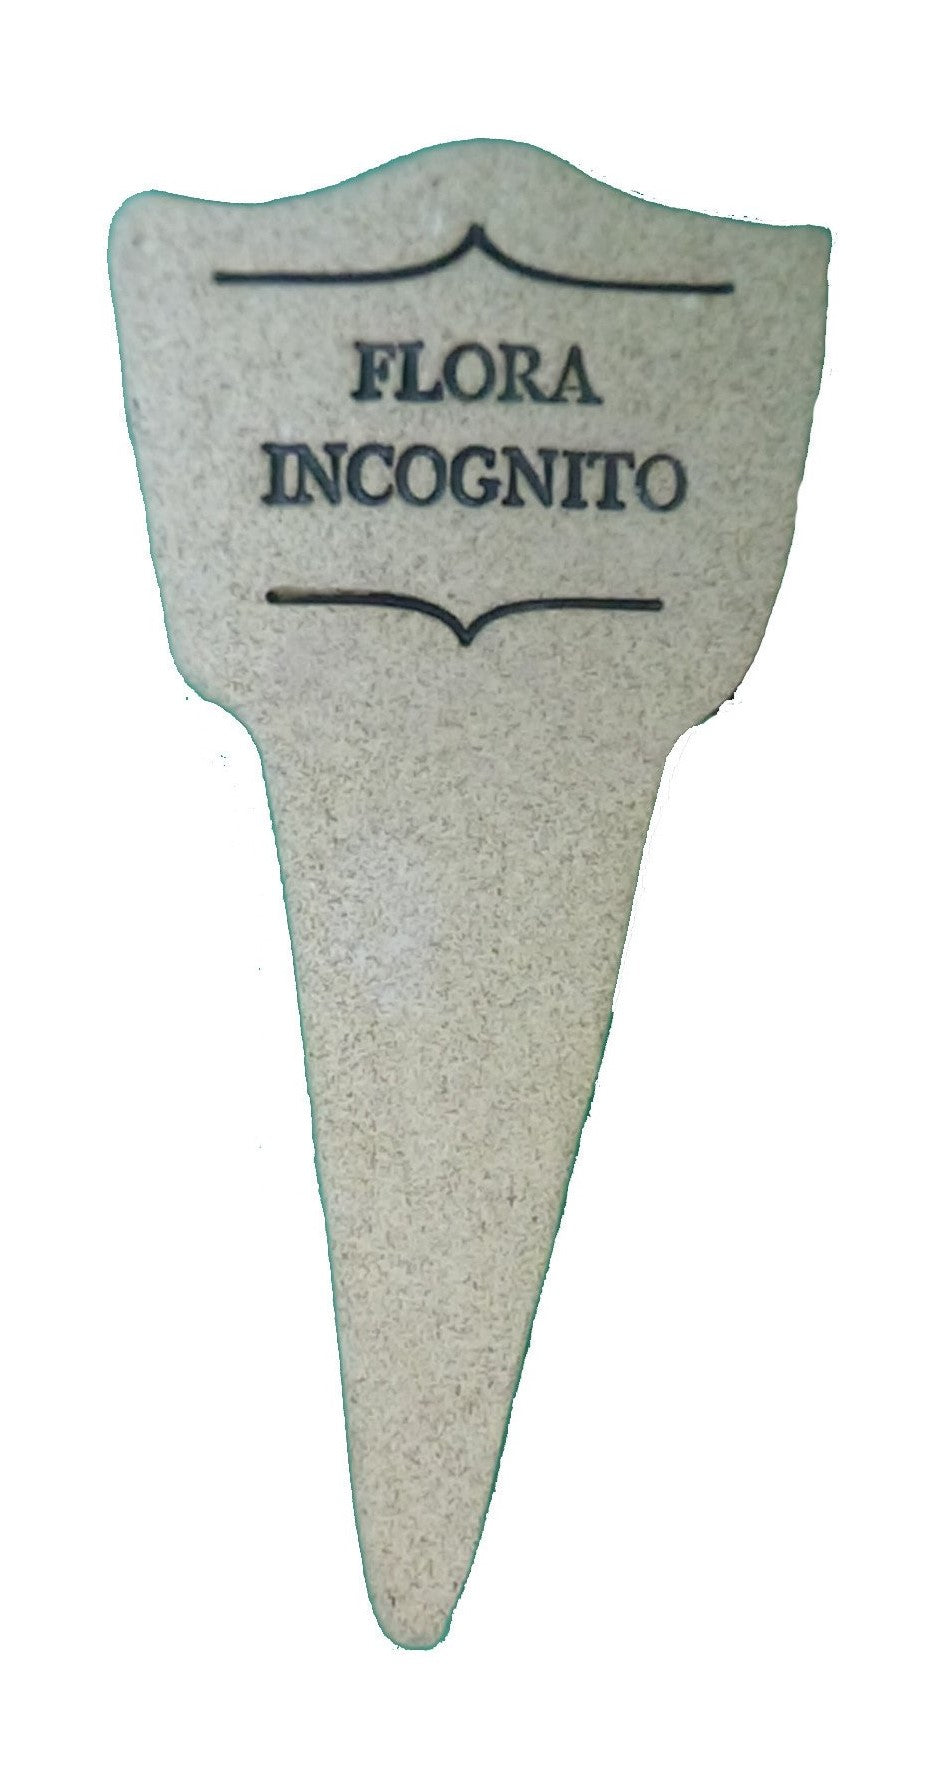 Flora Incognito